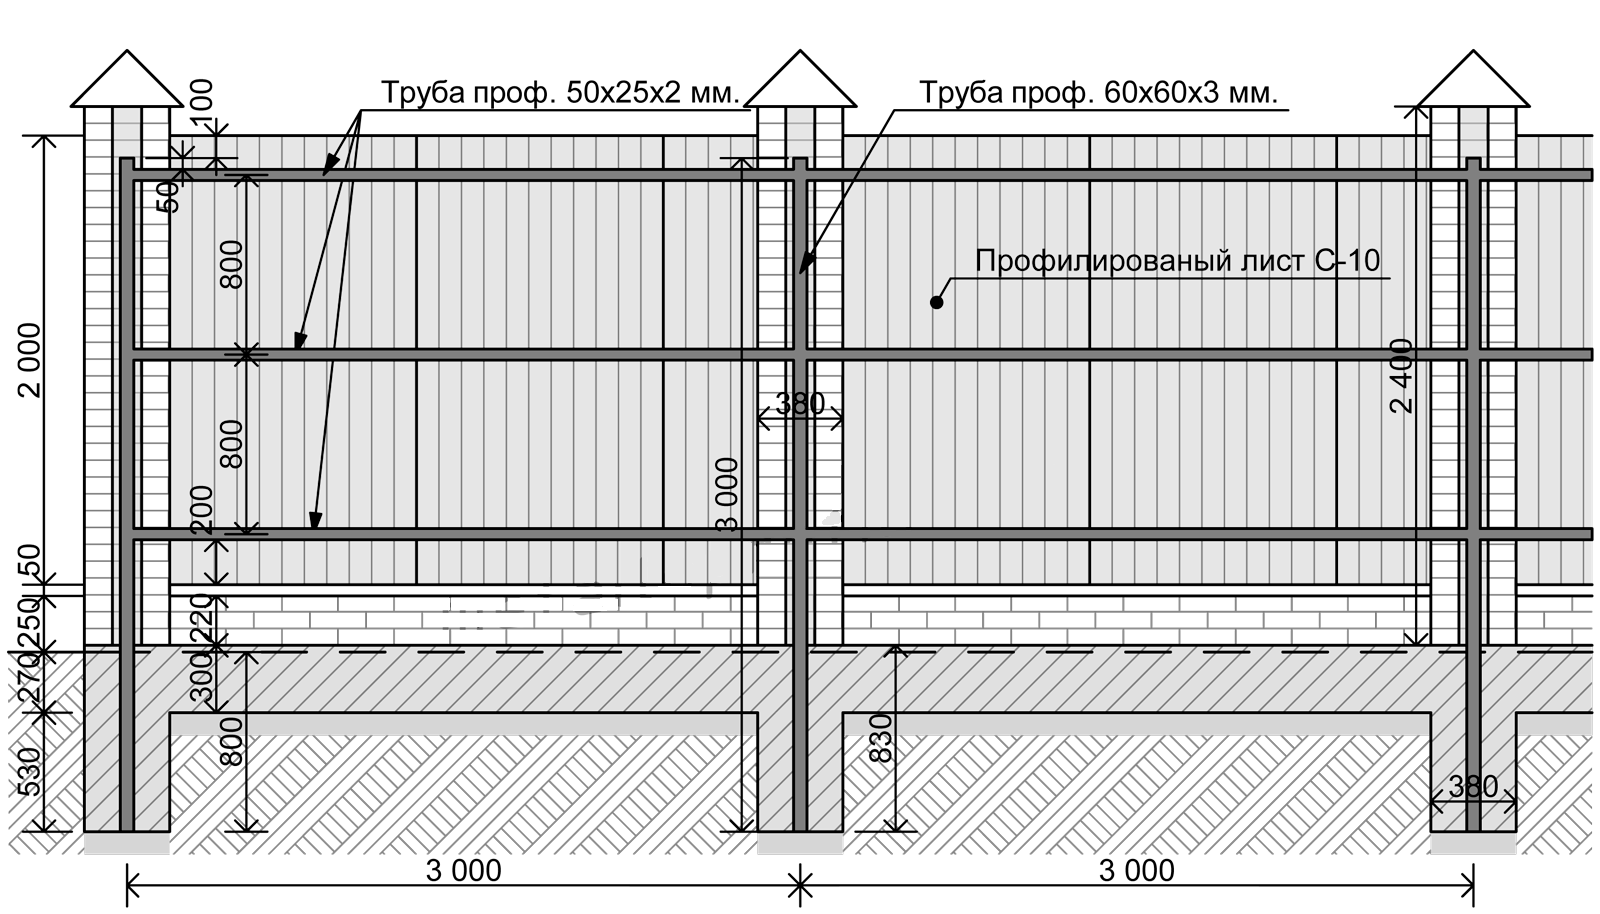 Ширина ворот: размеры, высота для забора в частном доме, оптимальная для калитки на участок